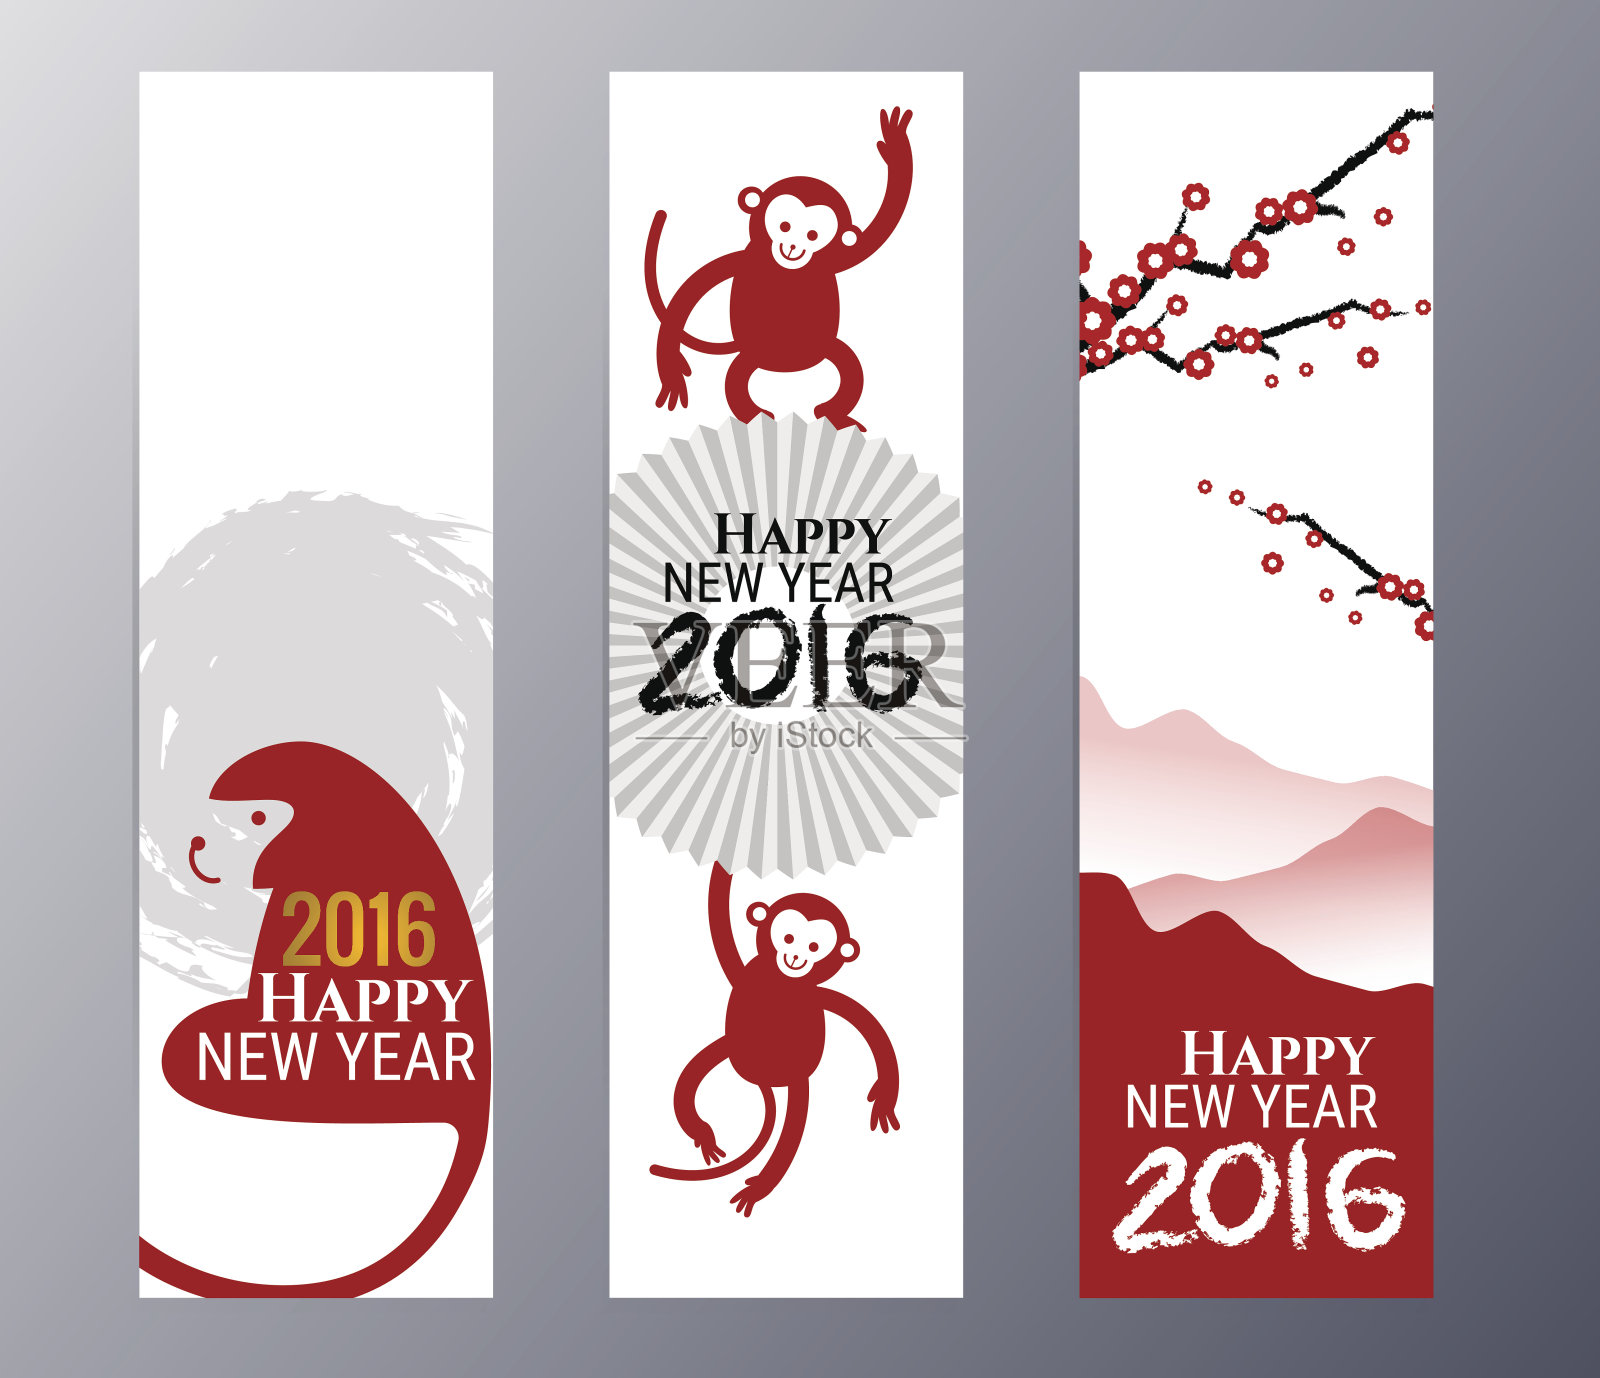 以中国猴年为主题的旗帜矢量插图设计模板素材